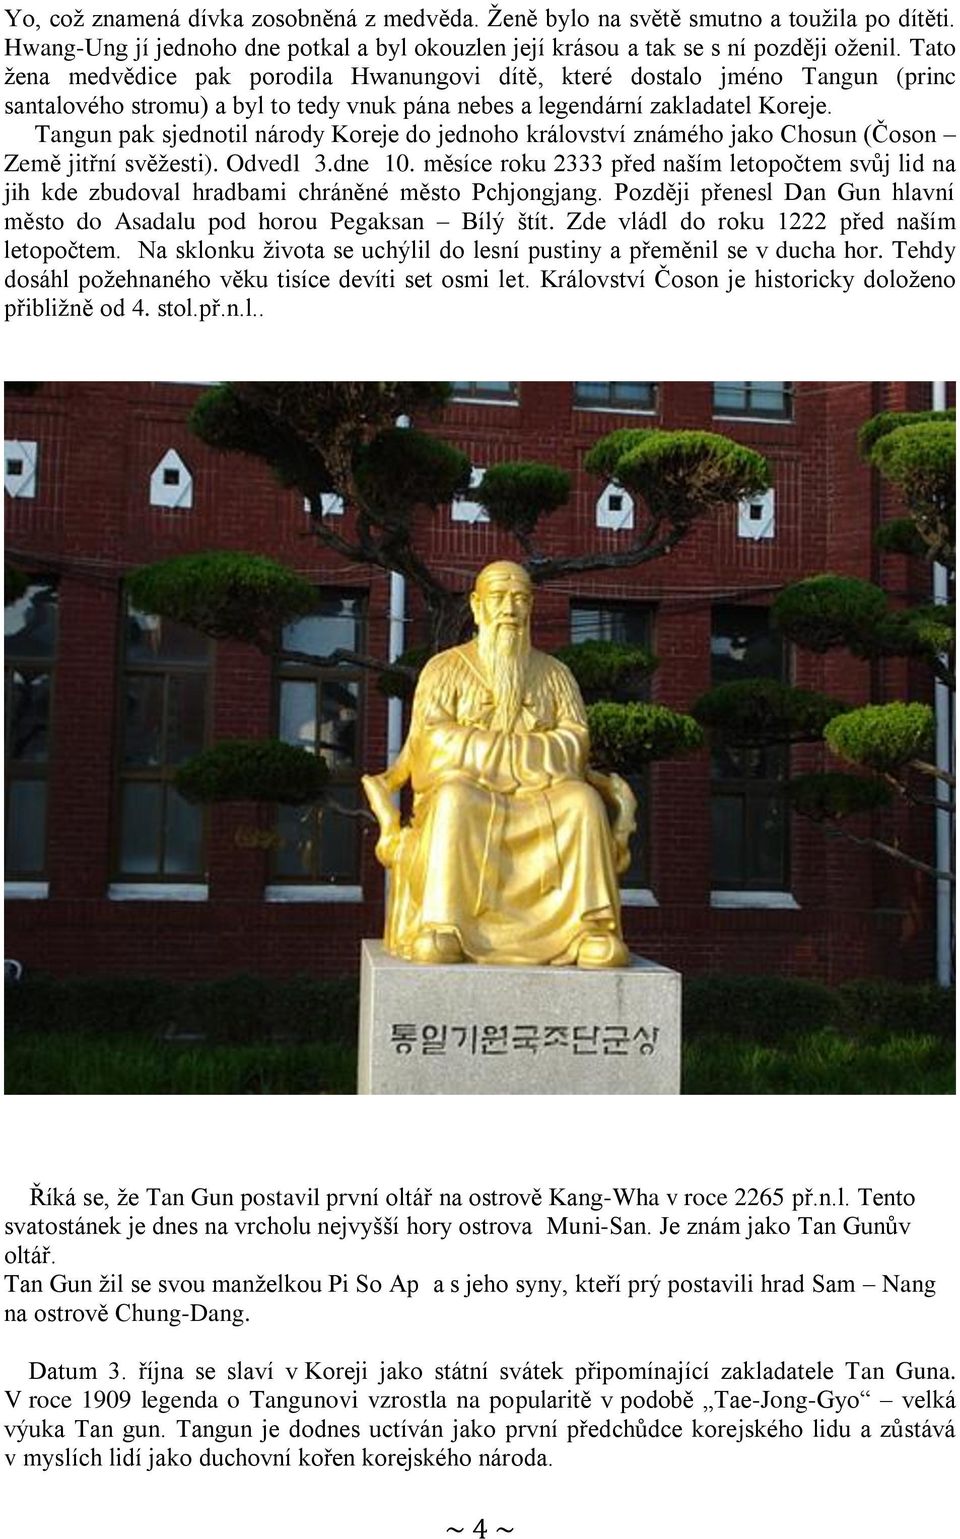 Tangun pak sjednotil národy Koreje do jednoho království známého jako Chosun (Čoson Země jitřní svěžesti). Odvedl 3.dne 10.